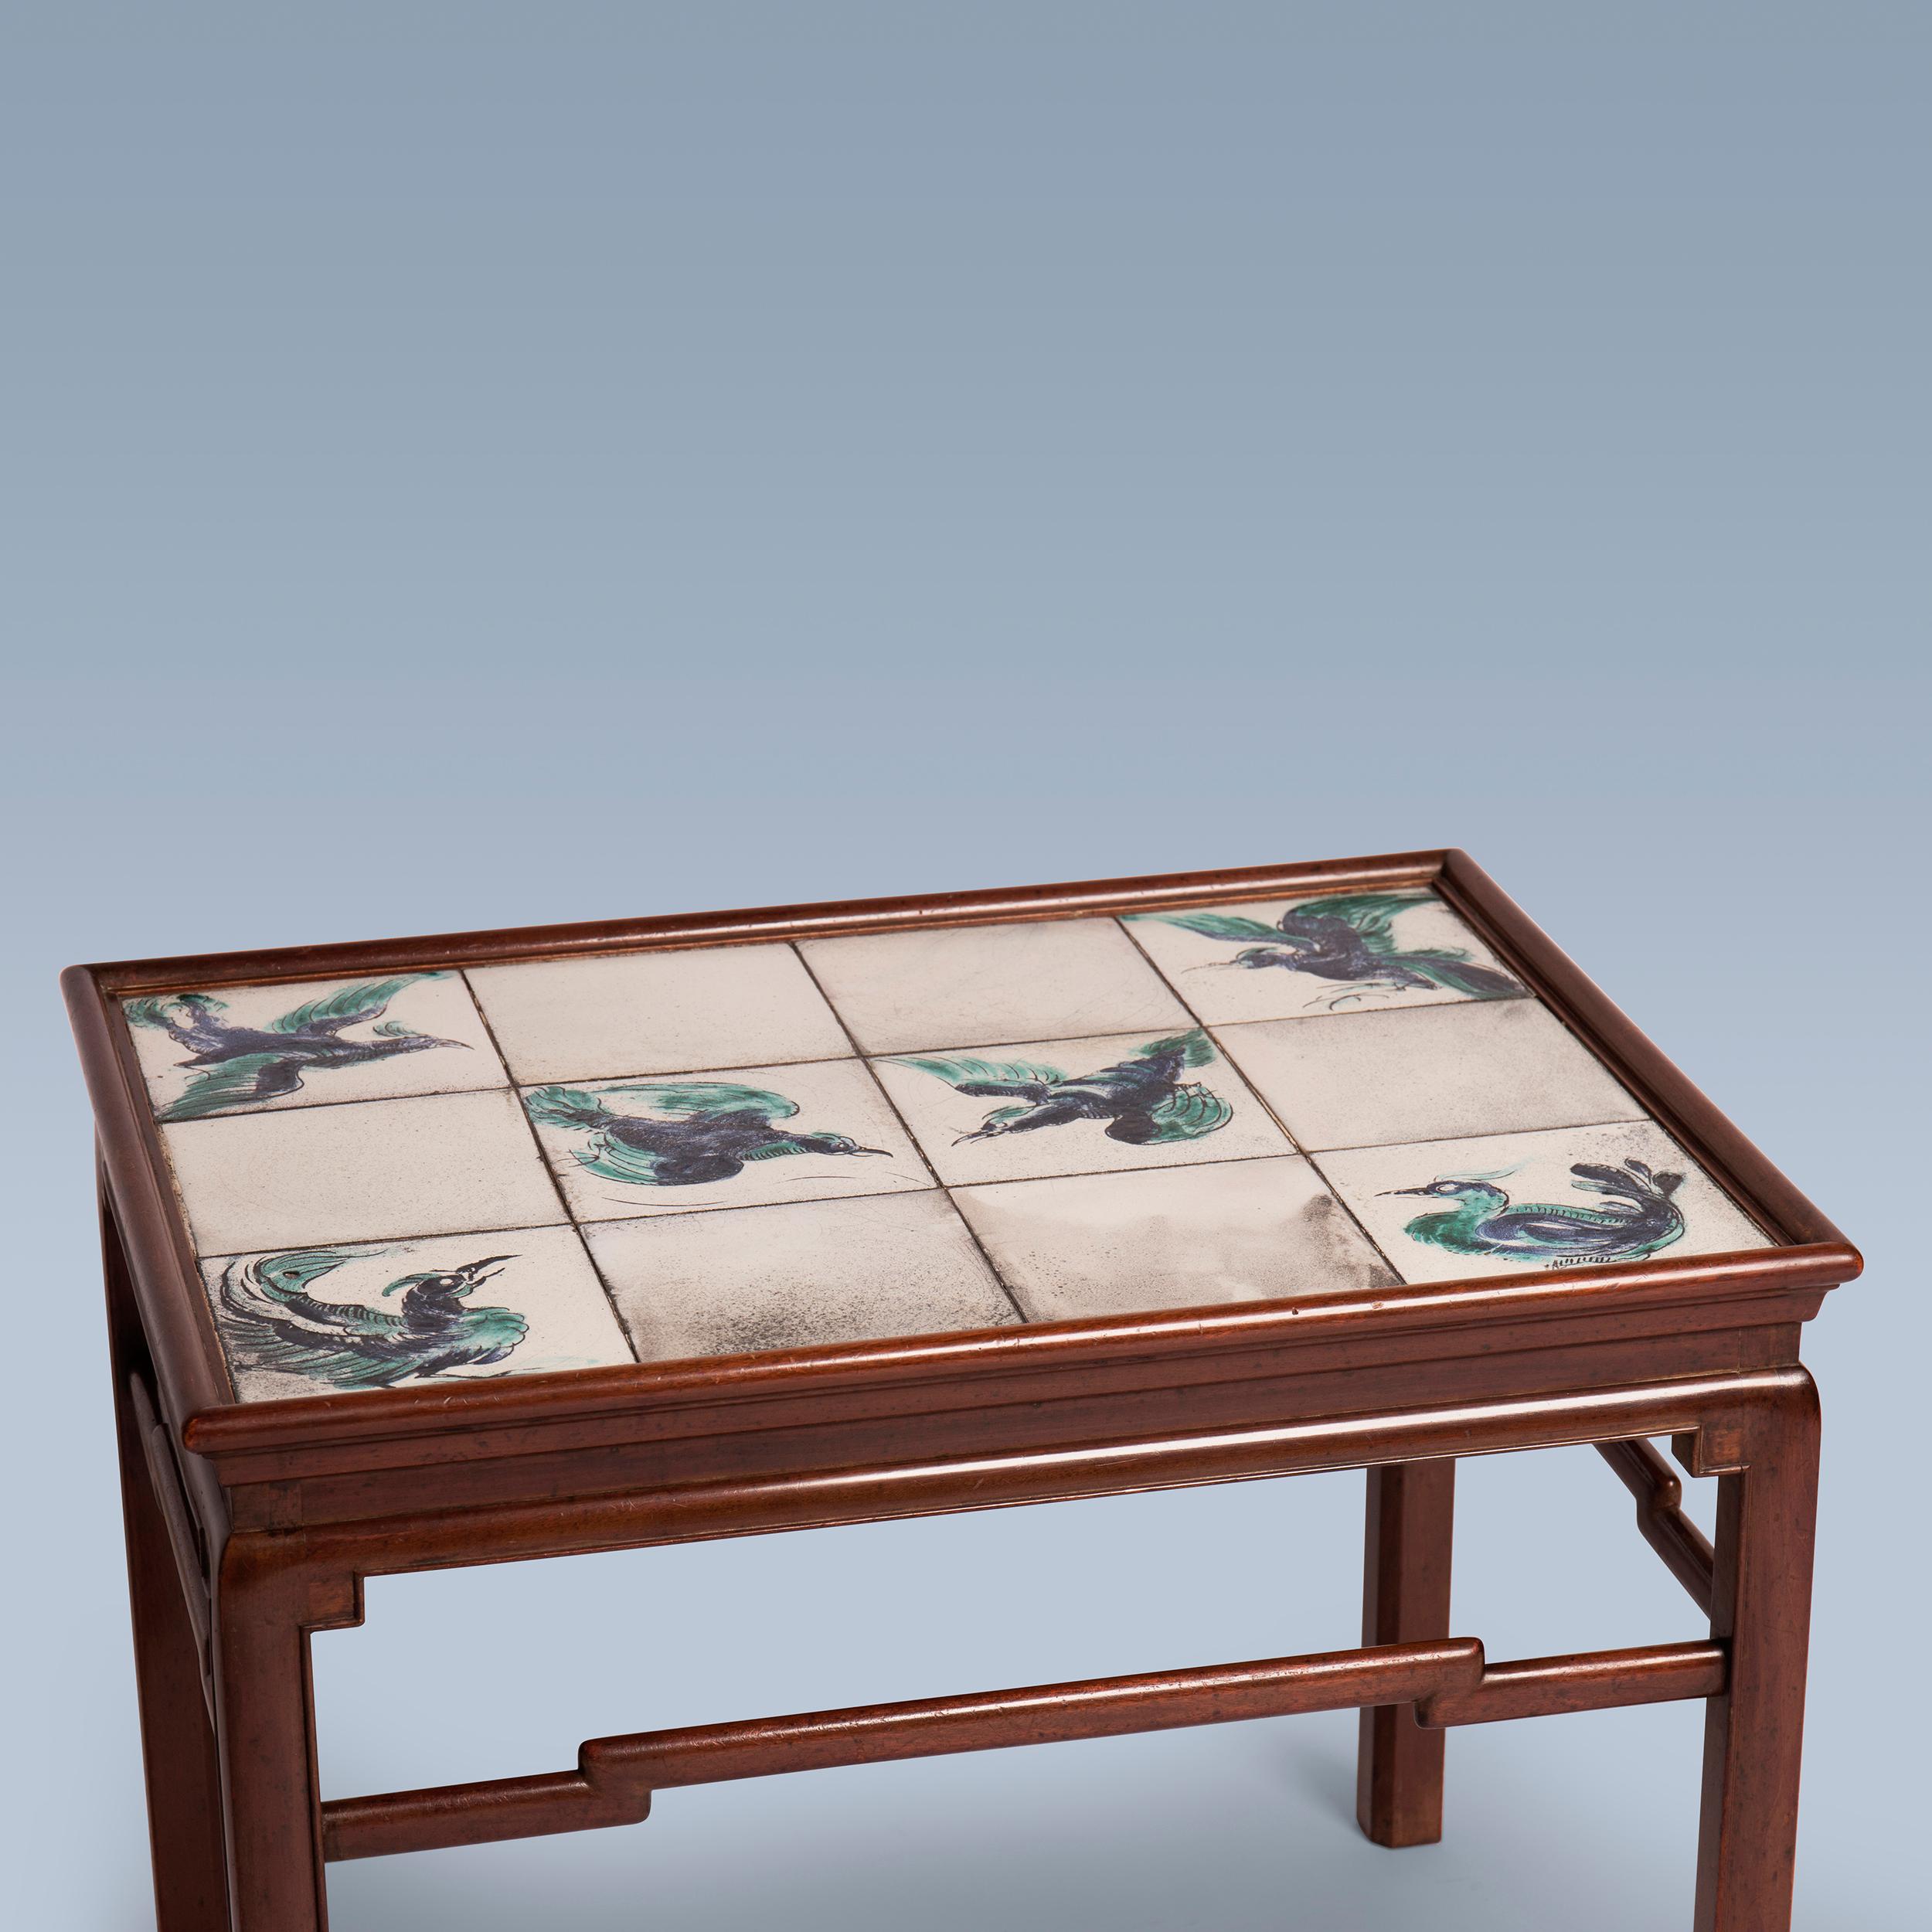 Scandinave moderne Table basse d'inspiration chinoise en acajou avec carreaux aux nuances blanches, vertes et bleues en vente